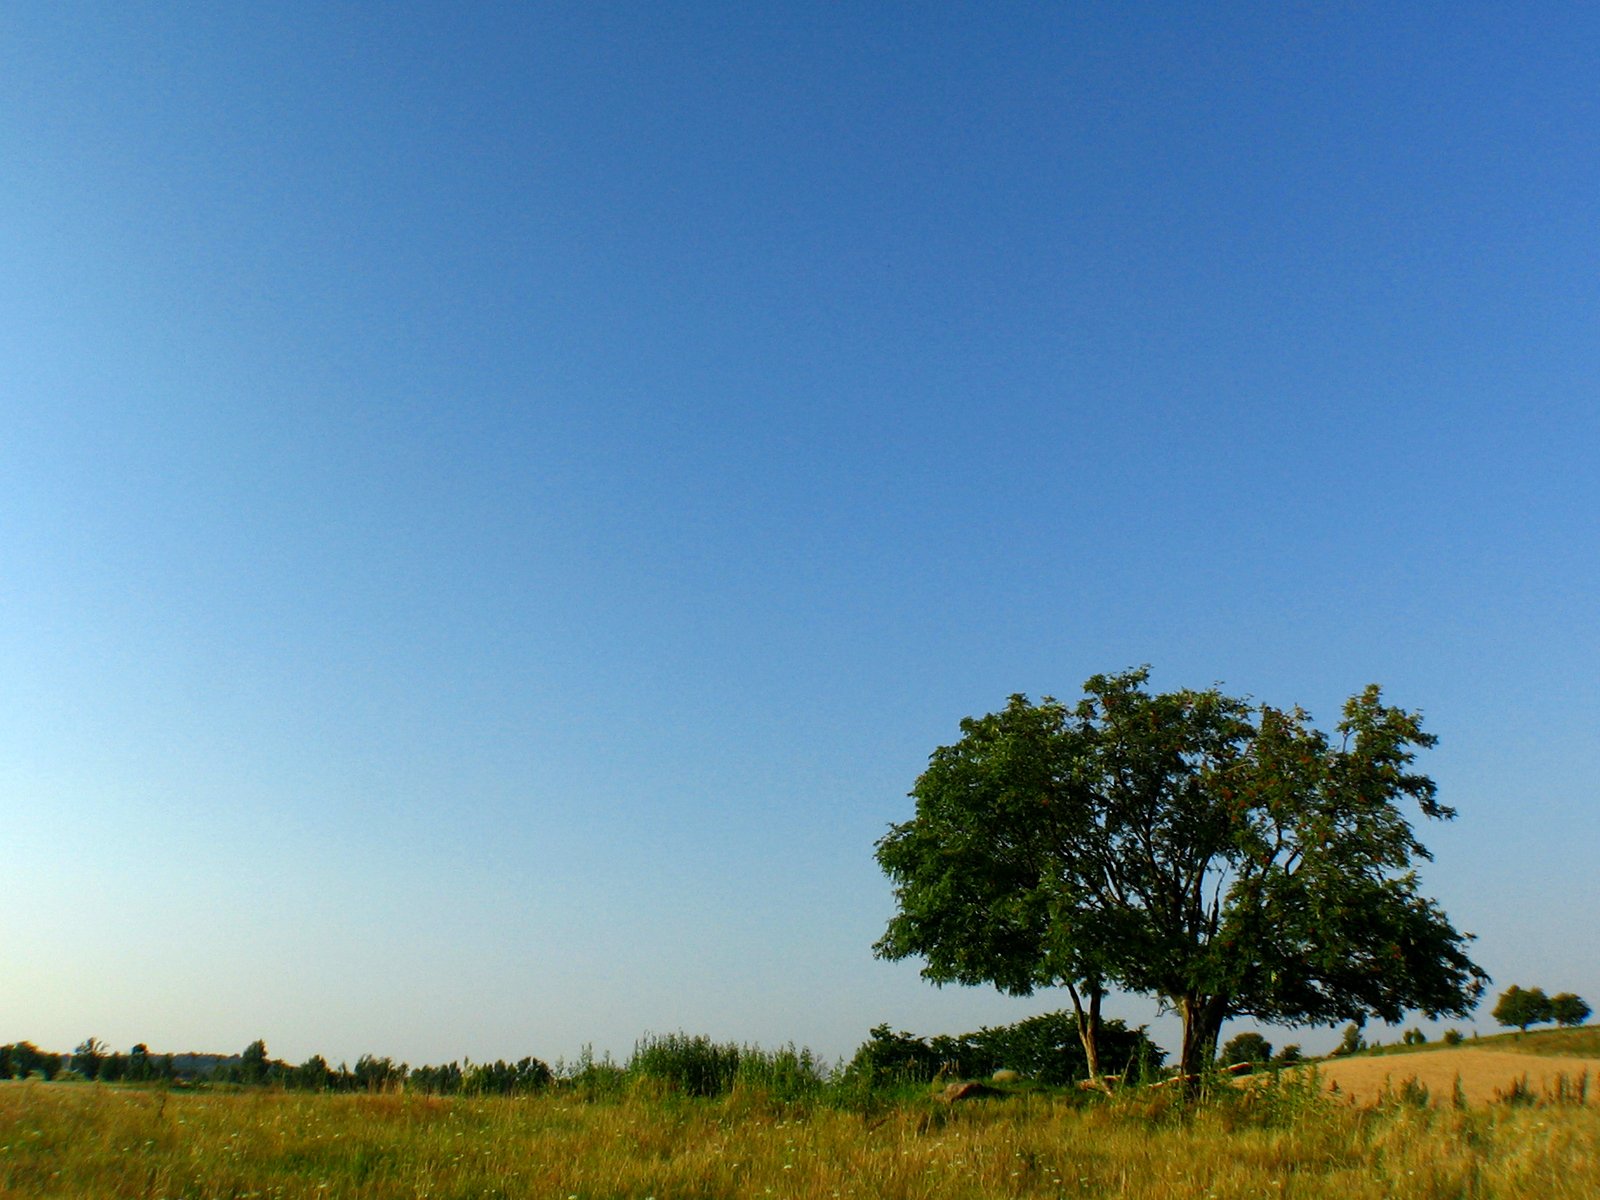 lone tree in grassy field under clear blue sky